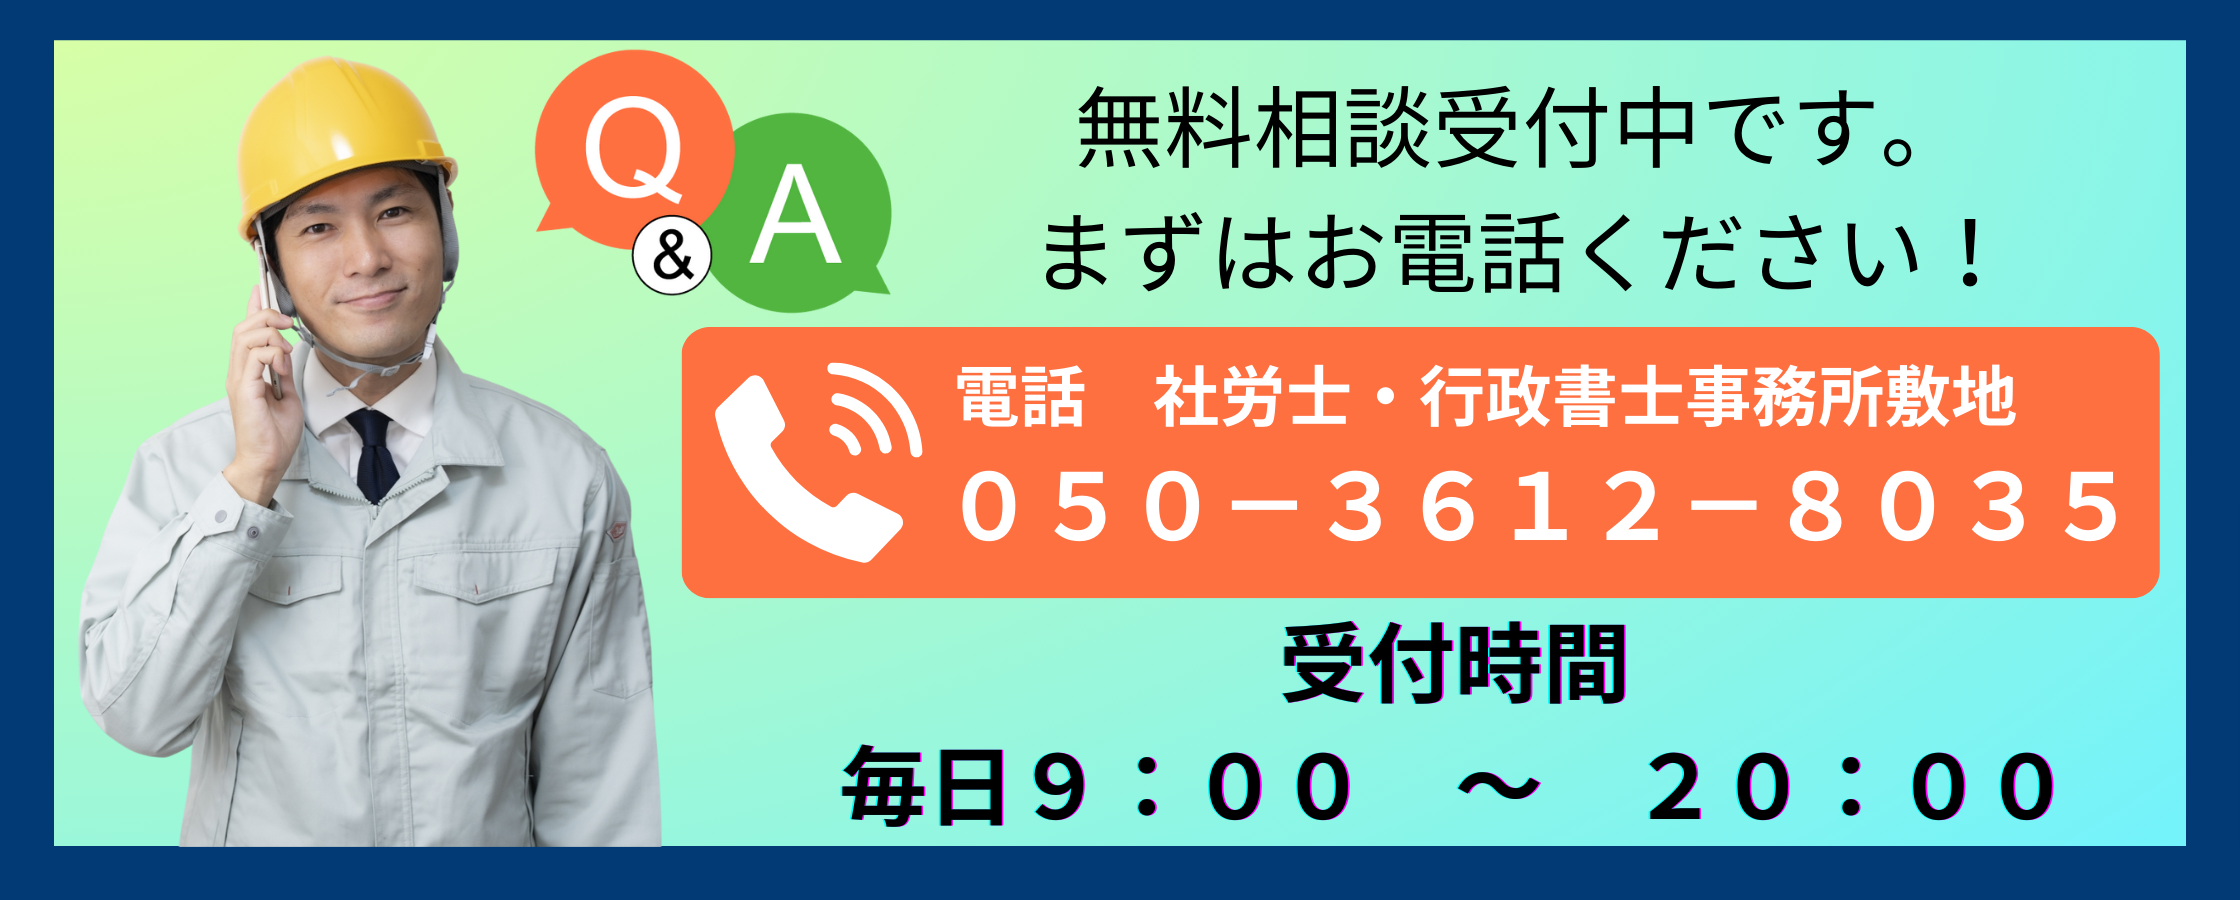 静岡の建設業許可の無料相談を受け付けています。社労士・行政書士事務所敷地へお電話ください。朝9時から夜8時まで受け付けています。